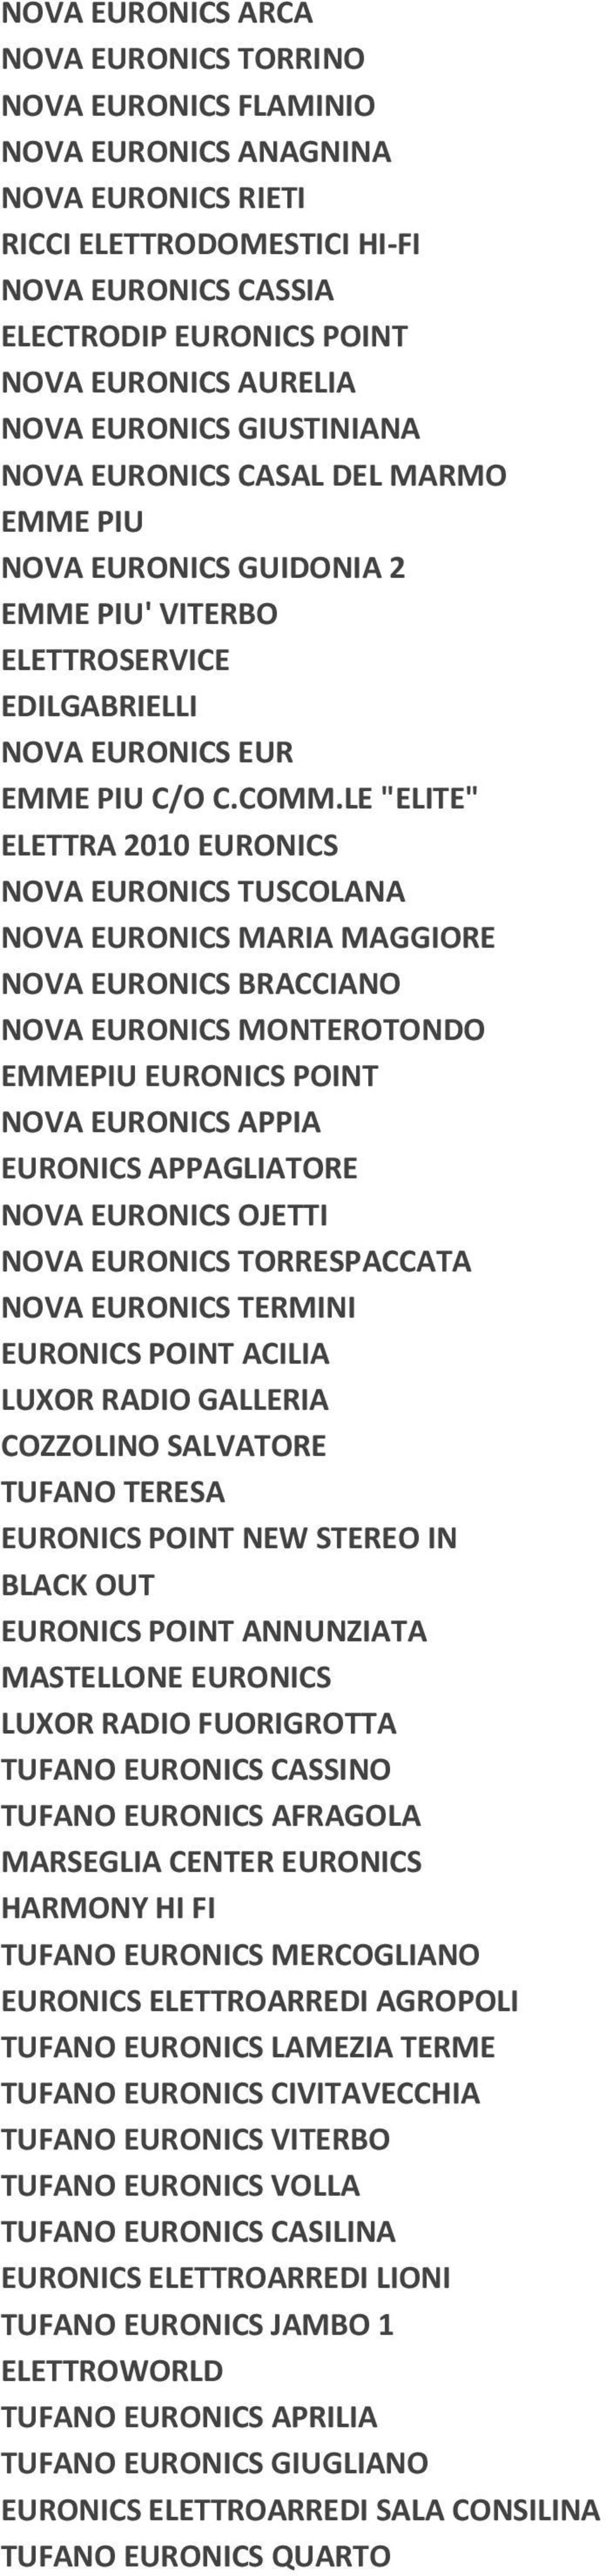 Insegna Mediamarket Gruppo Unieuro Comet Sme Grancasa Leroy Merlyn Euronics Italia Pdf Download Gratuito